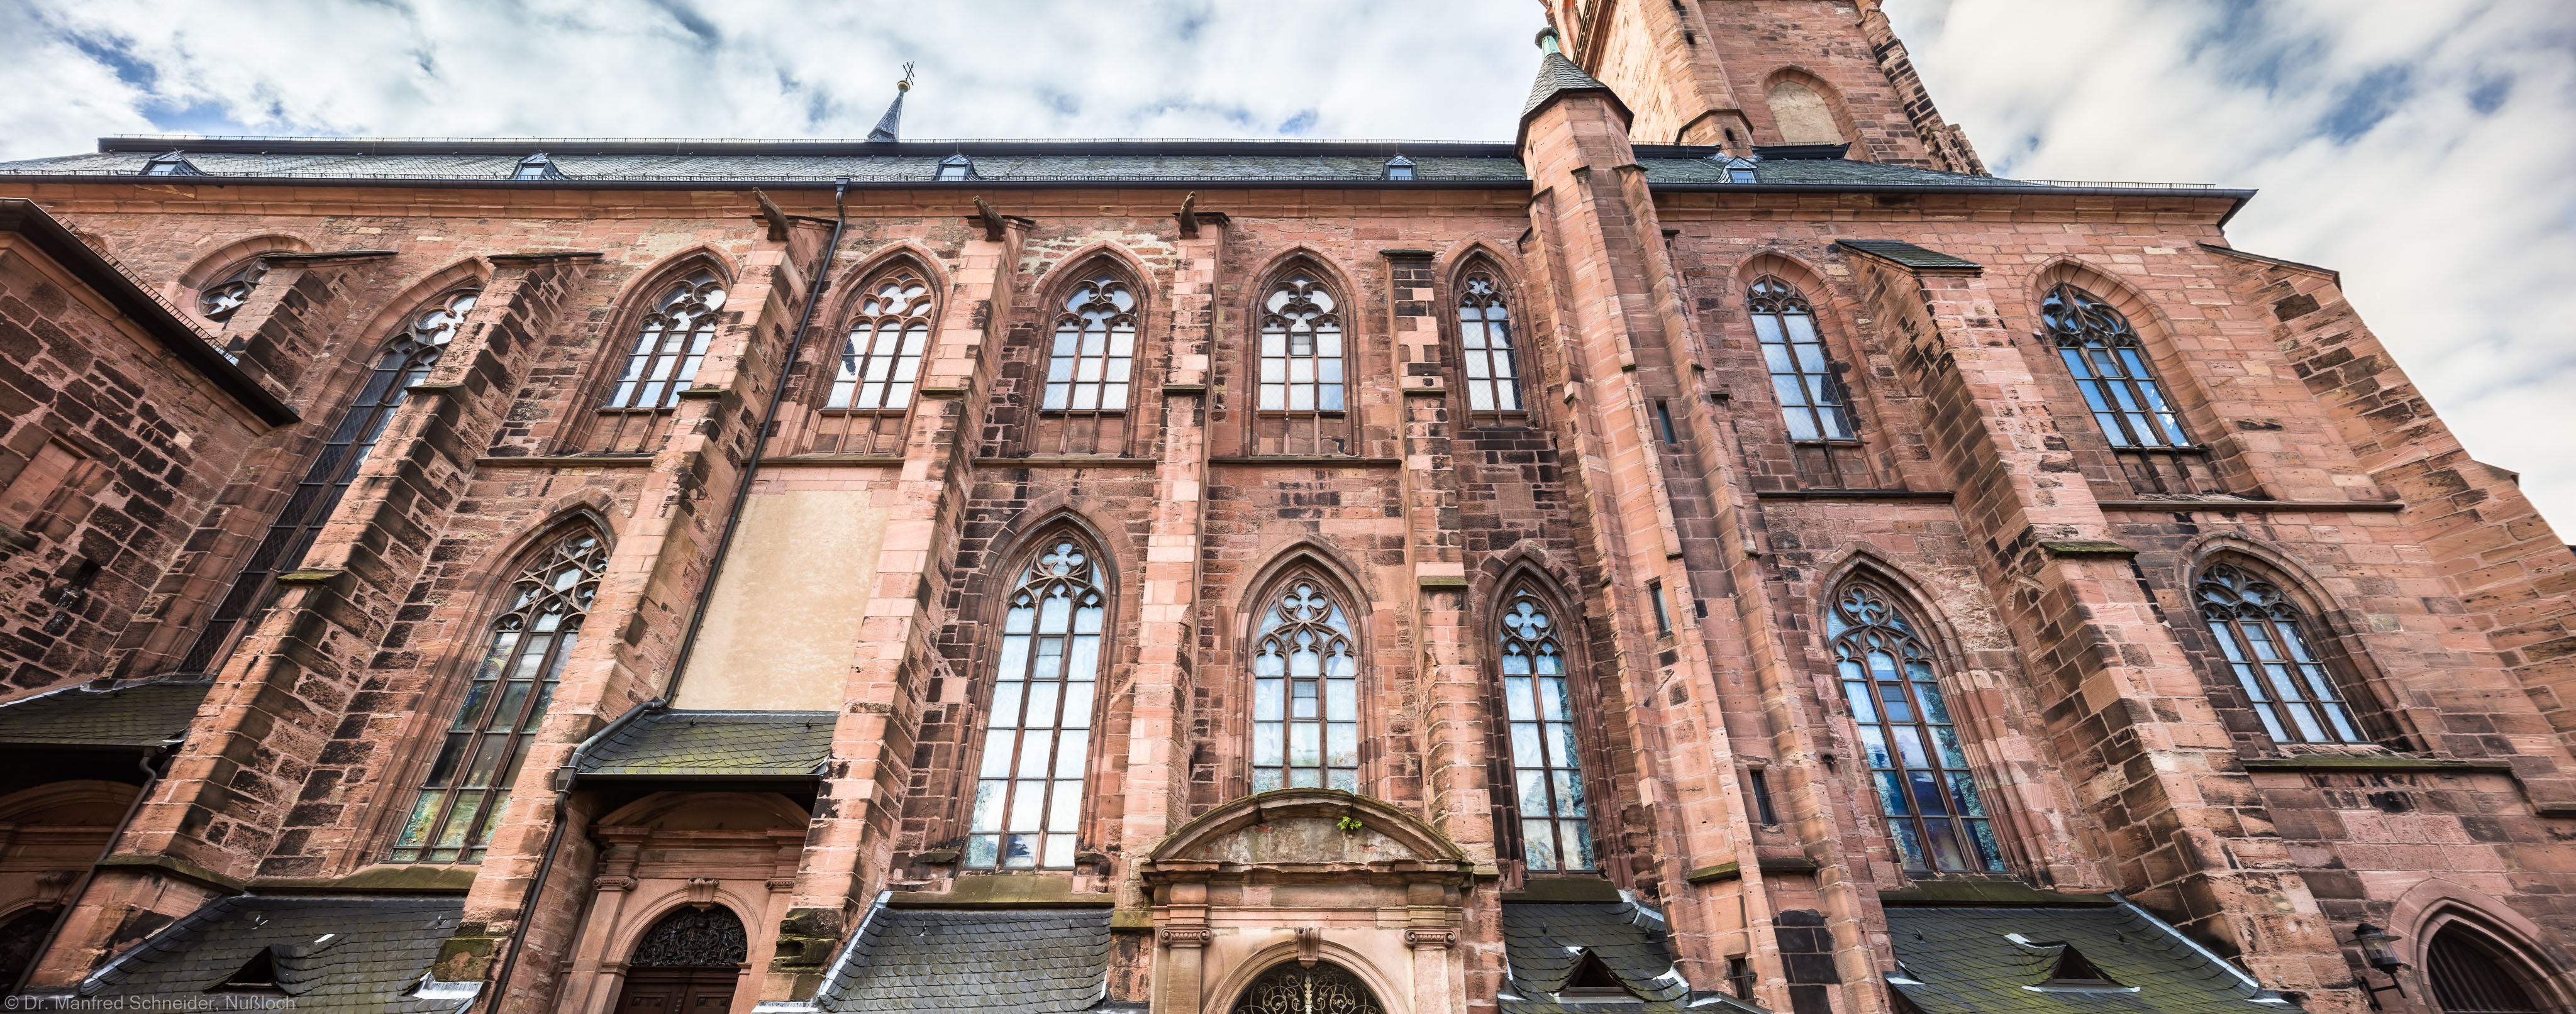 Heidelberg - Heiliggeistkirche - Aussen / Nord - Blick nach oben auf die Nordfassade (aufgenommen im Oktober 2015, am späten Vormittag)